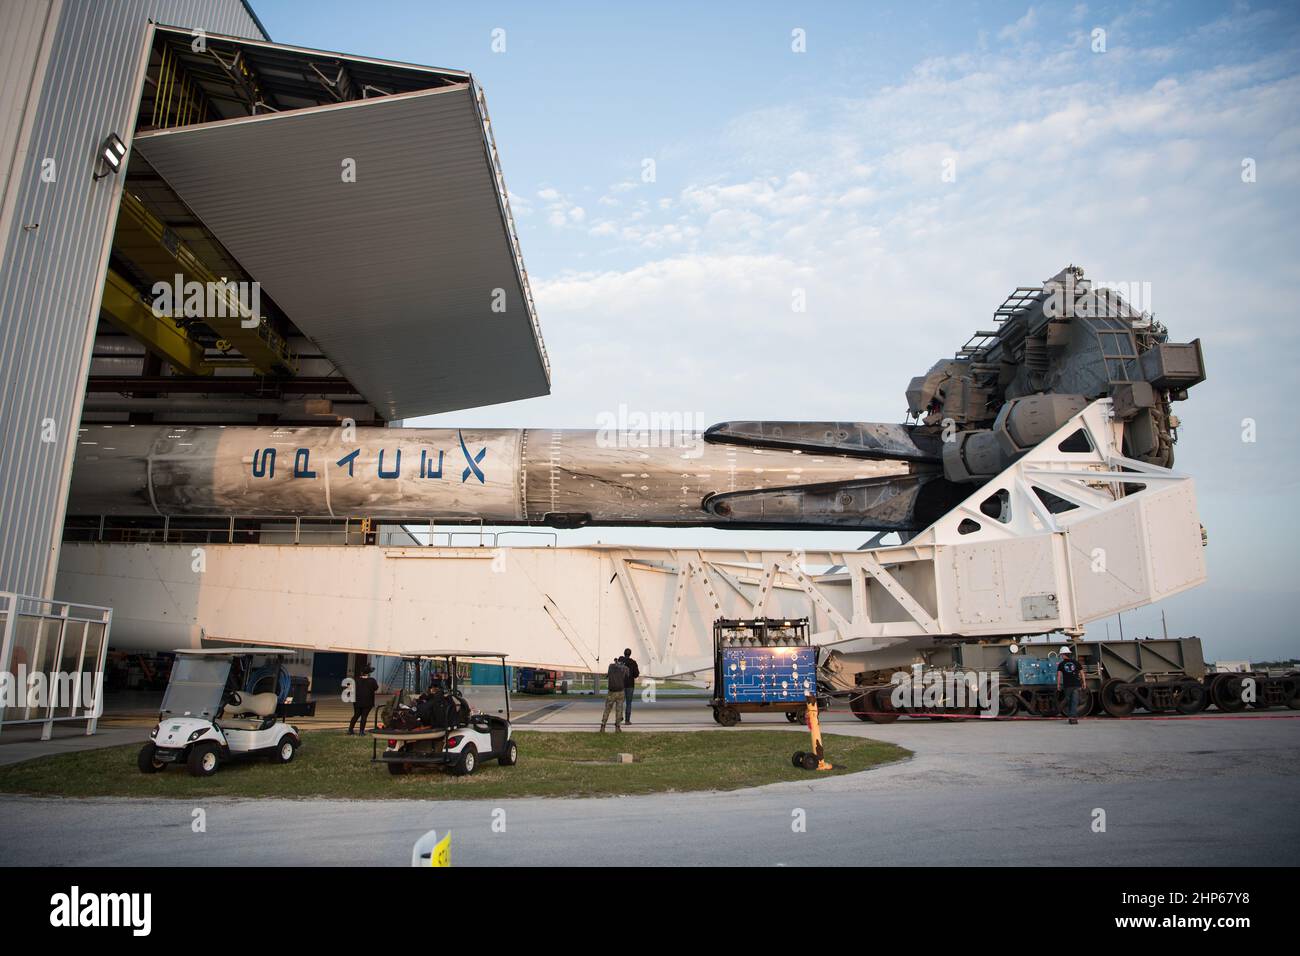 Un cohete SpaceX Falcon 9 con la nave espacial Crew Dragon de la compañía a bordo se ve como se desenrolla de la instalación de integración horizontal en el Complejo de Lanzamiento 39A mientras continúan los preparativos para la misión Crew-2, el viernes 16 de abril de 2021, en el Centro Espacial Kennedy de la NASA en Florida. La misión SpaceX Crew-2 de la NASA es la segunda misión de rotación de la tripulación de la nave espacial SpaceX Crew Dragon y del cohete Falcon 9 a la Estación Espacial Internacional como parte del Programa de Crew Comercial de la agencia. Foto de stock